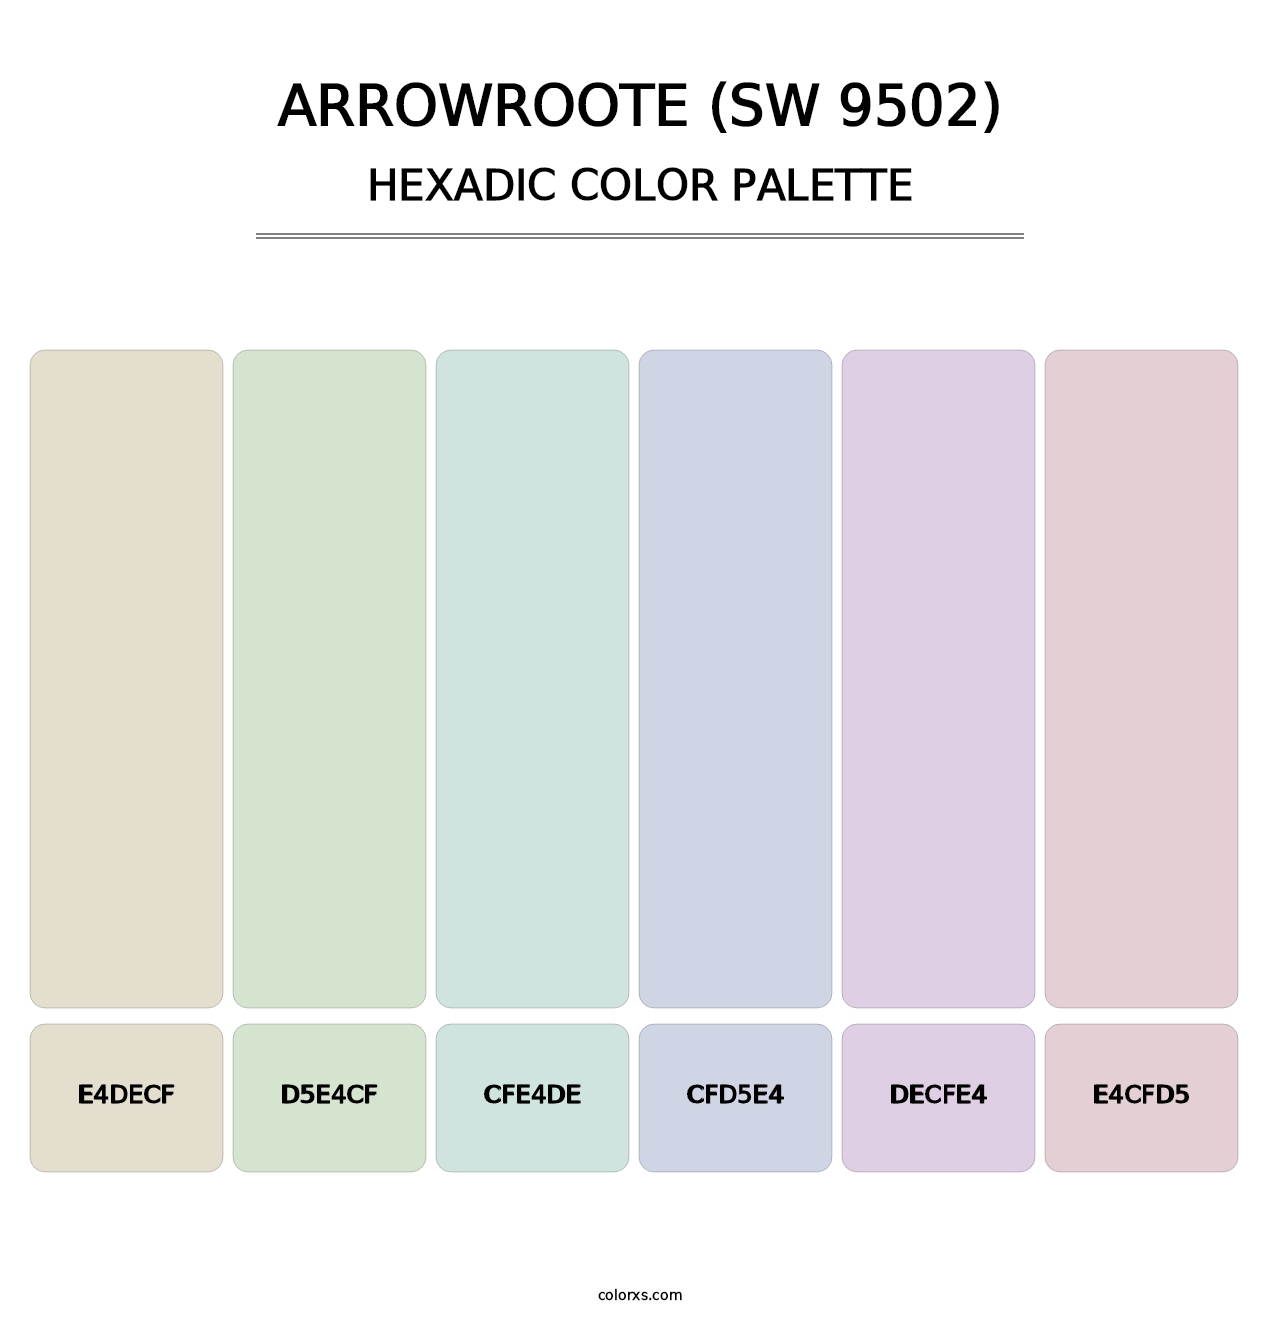 Arrowroote (SW 9502) - Hexadic Color Palette